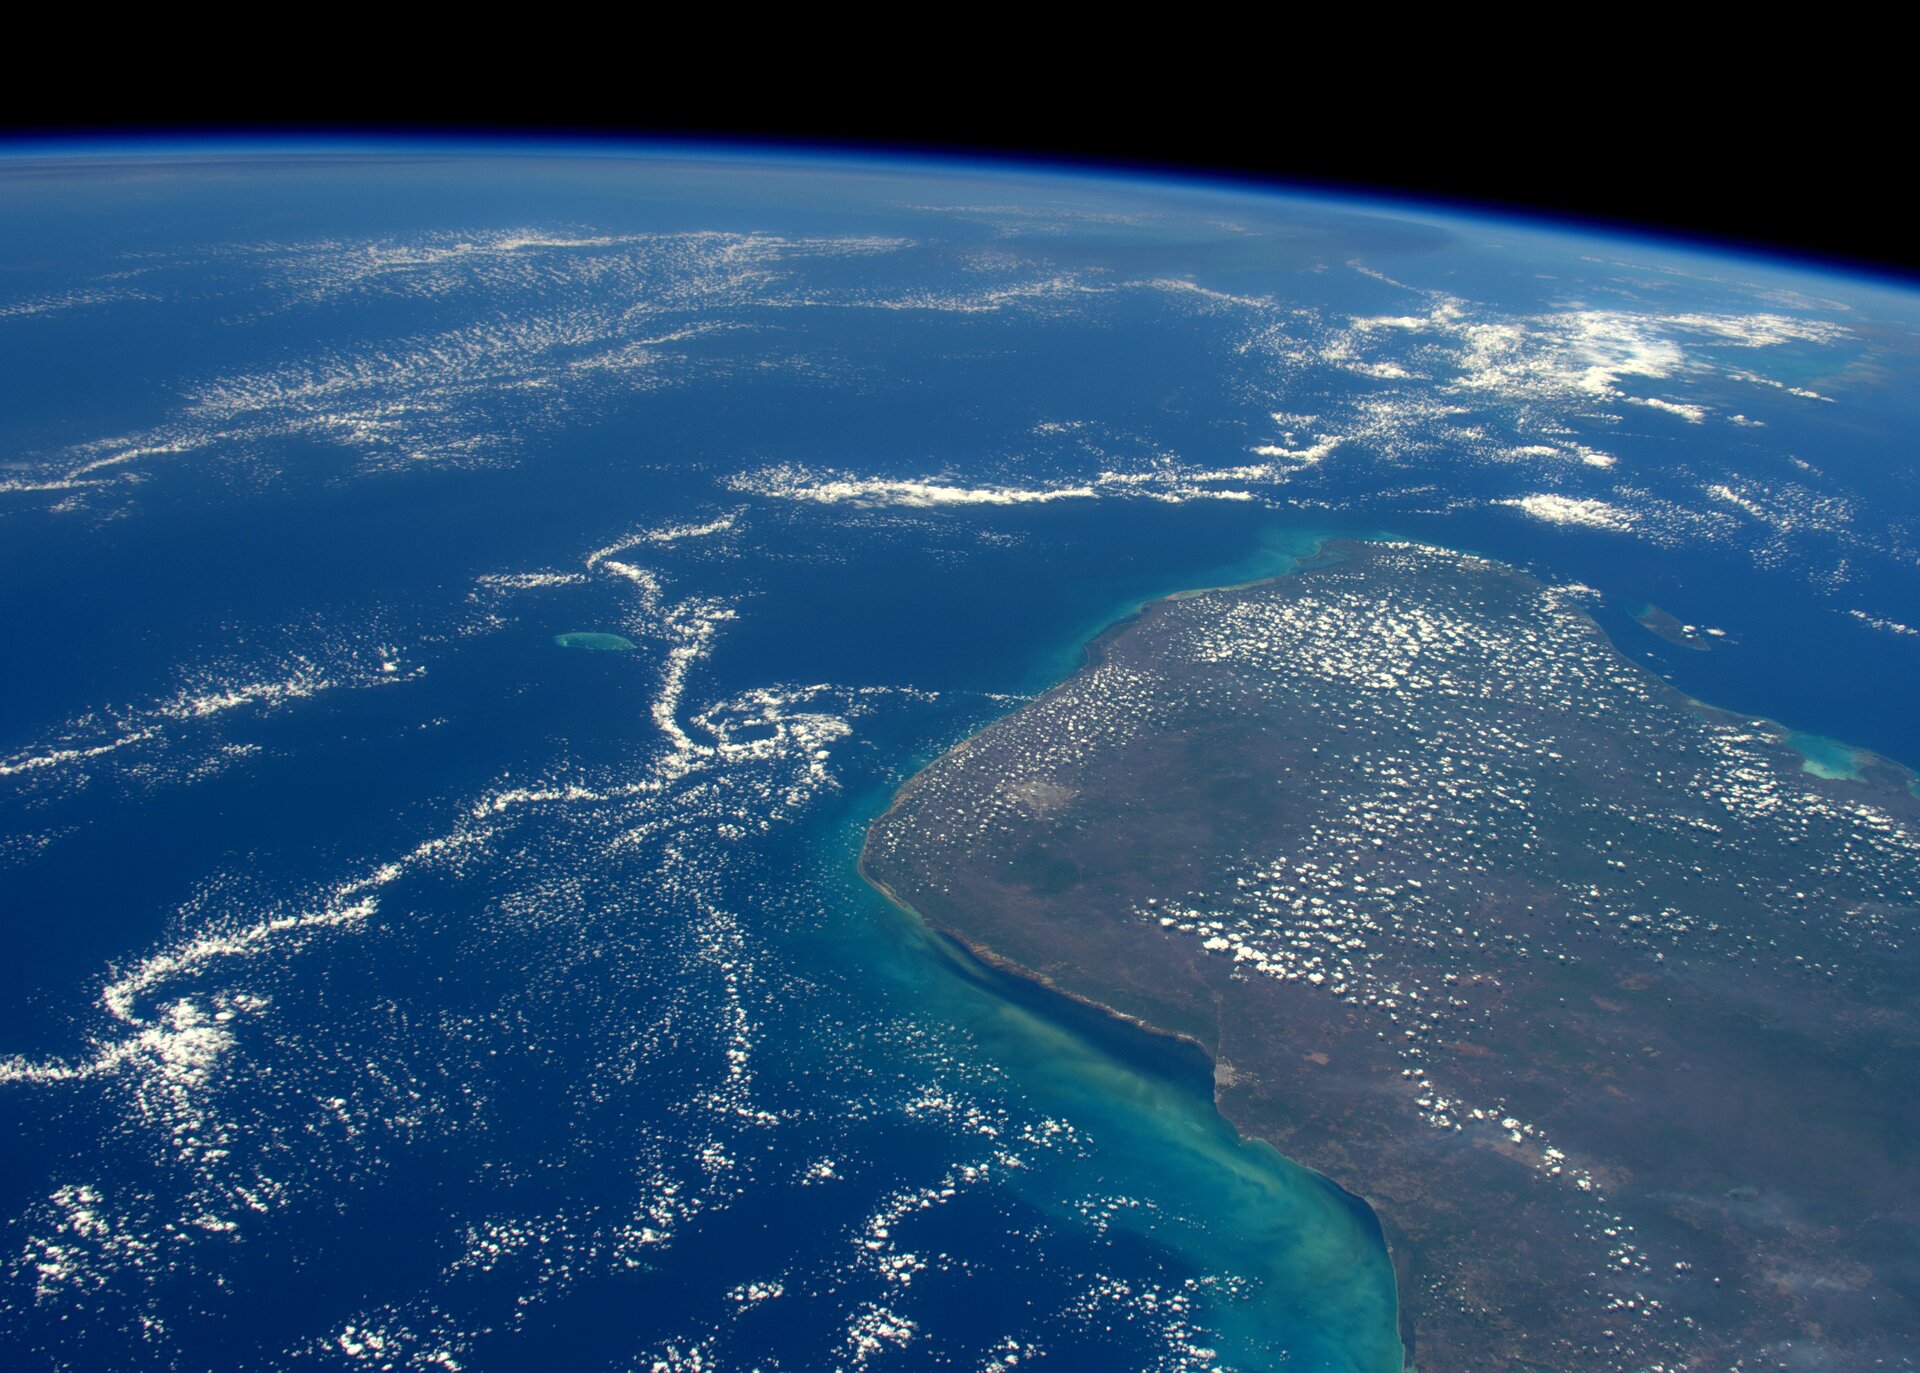 Yucatan Peninsula